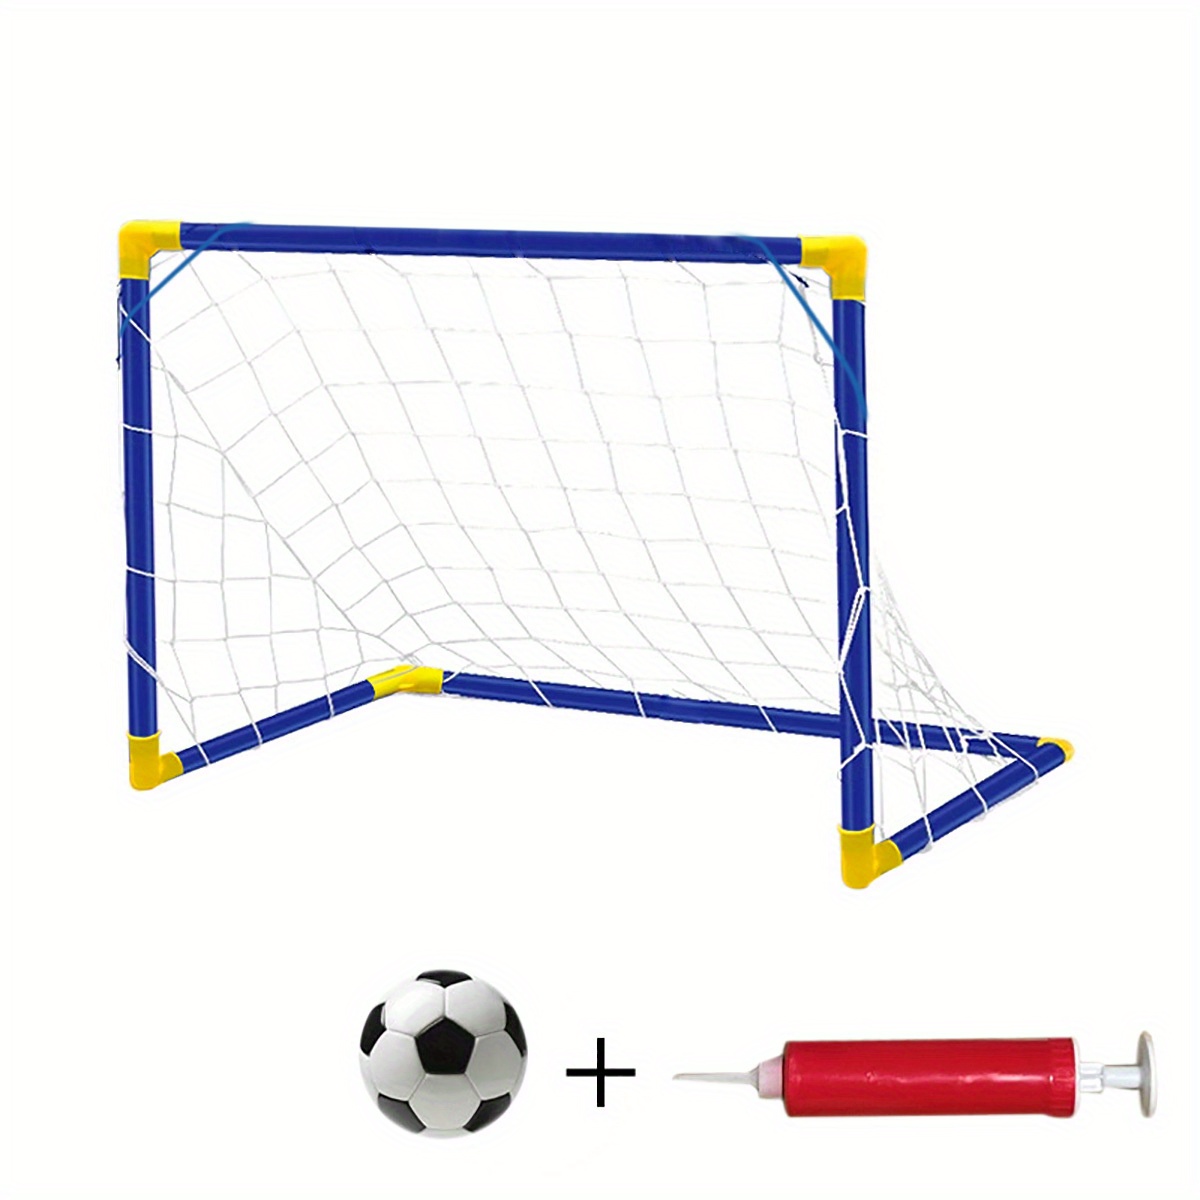 Tradineur - Portería montable de fútbol - Incluye balón de fútbol e  inflador - Ideal para niños y para el jardín, la playa o el